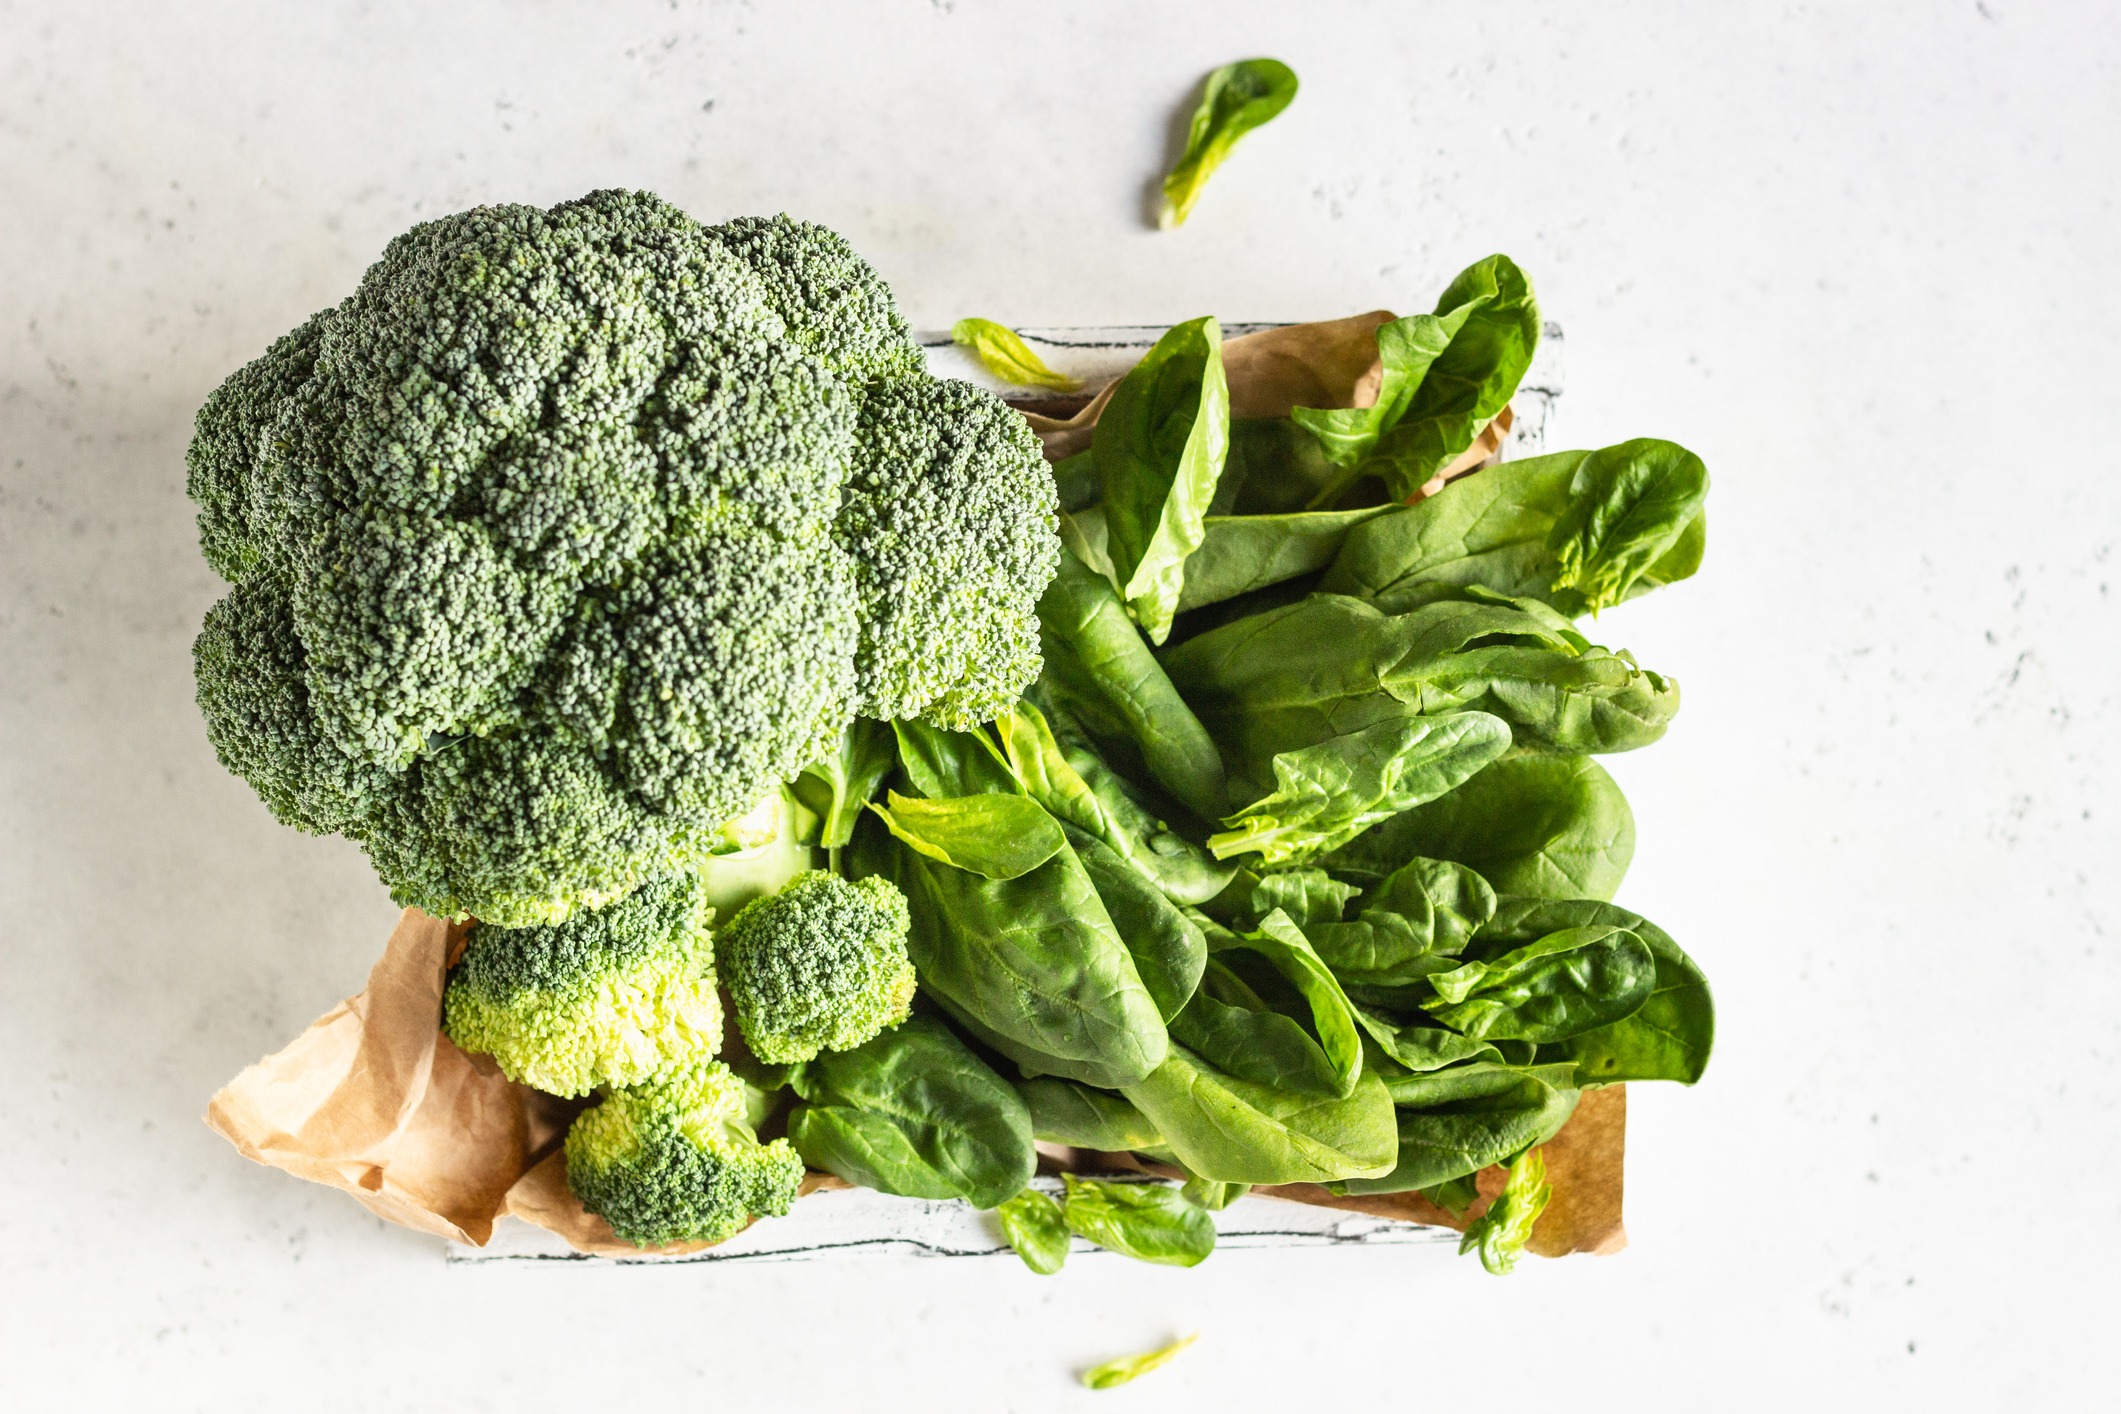 Consommer des légumes et des fruits frais et colorés, comme des brocolis et des épinards, permet de faire le plein de folates et de caroténoïdes. Gettyimages/porosolka